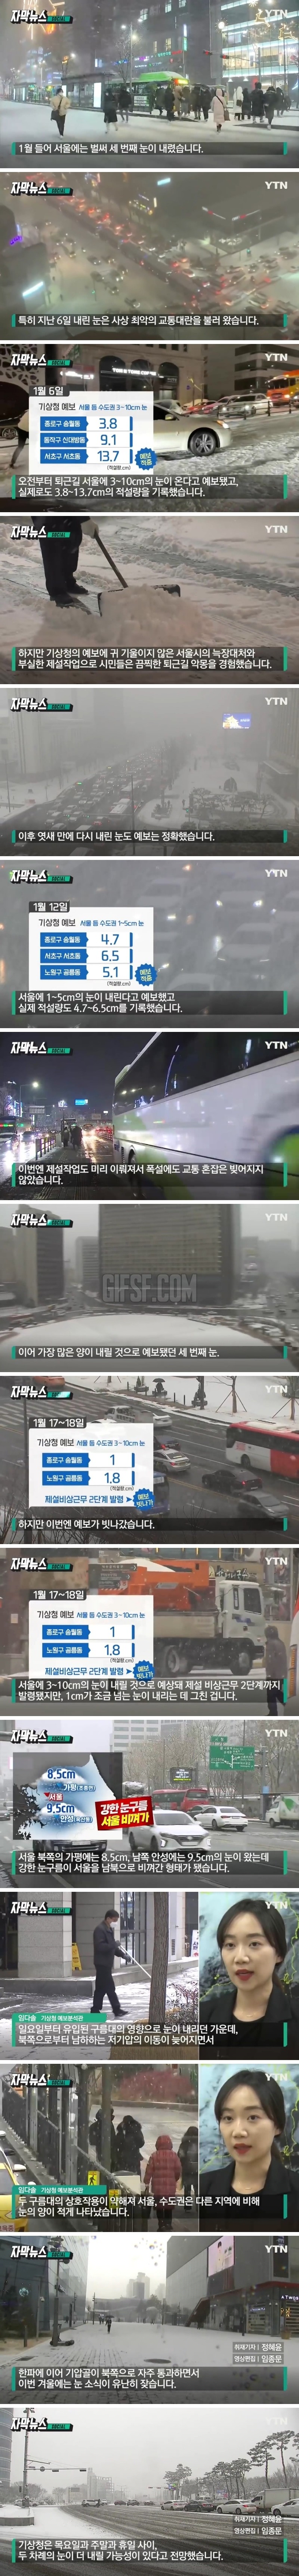 서울에 10cm 눈 온다더니.기상청 예보 빗나간 이유.jpg